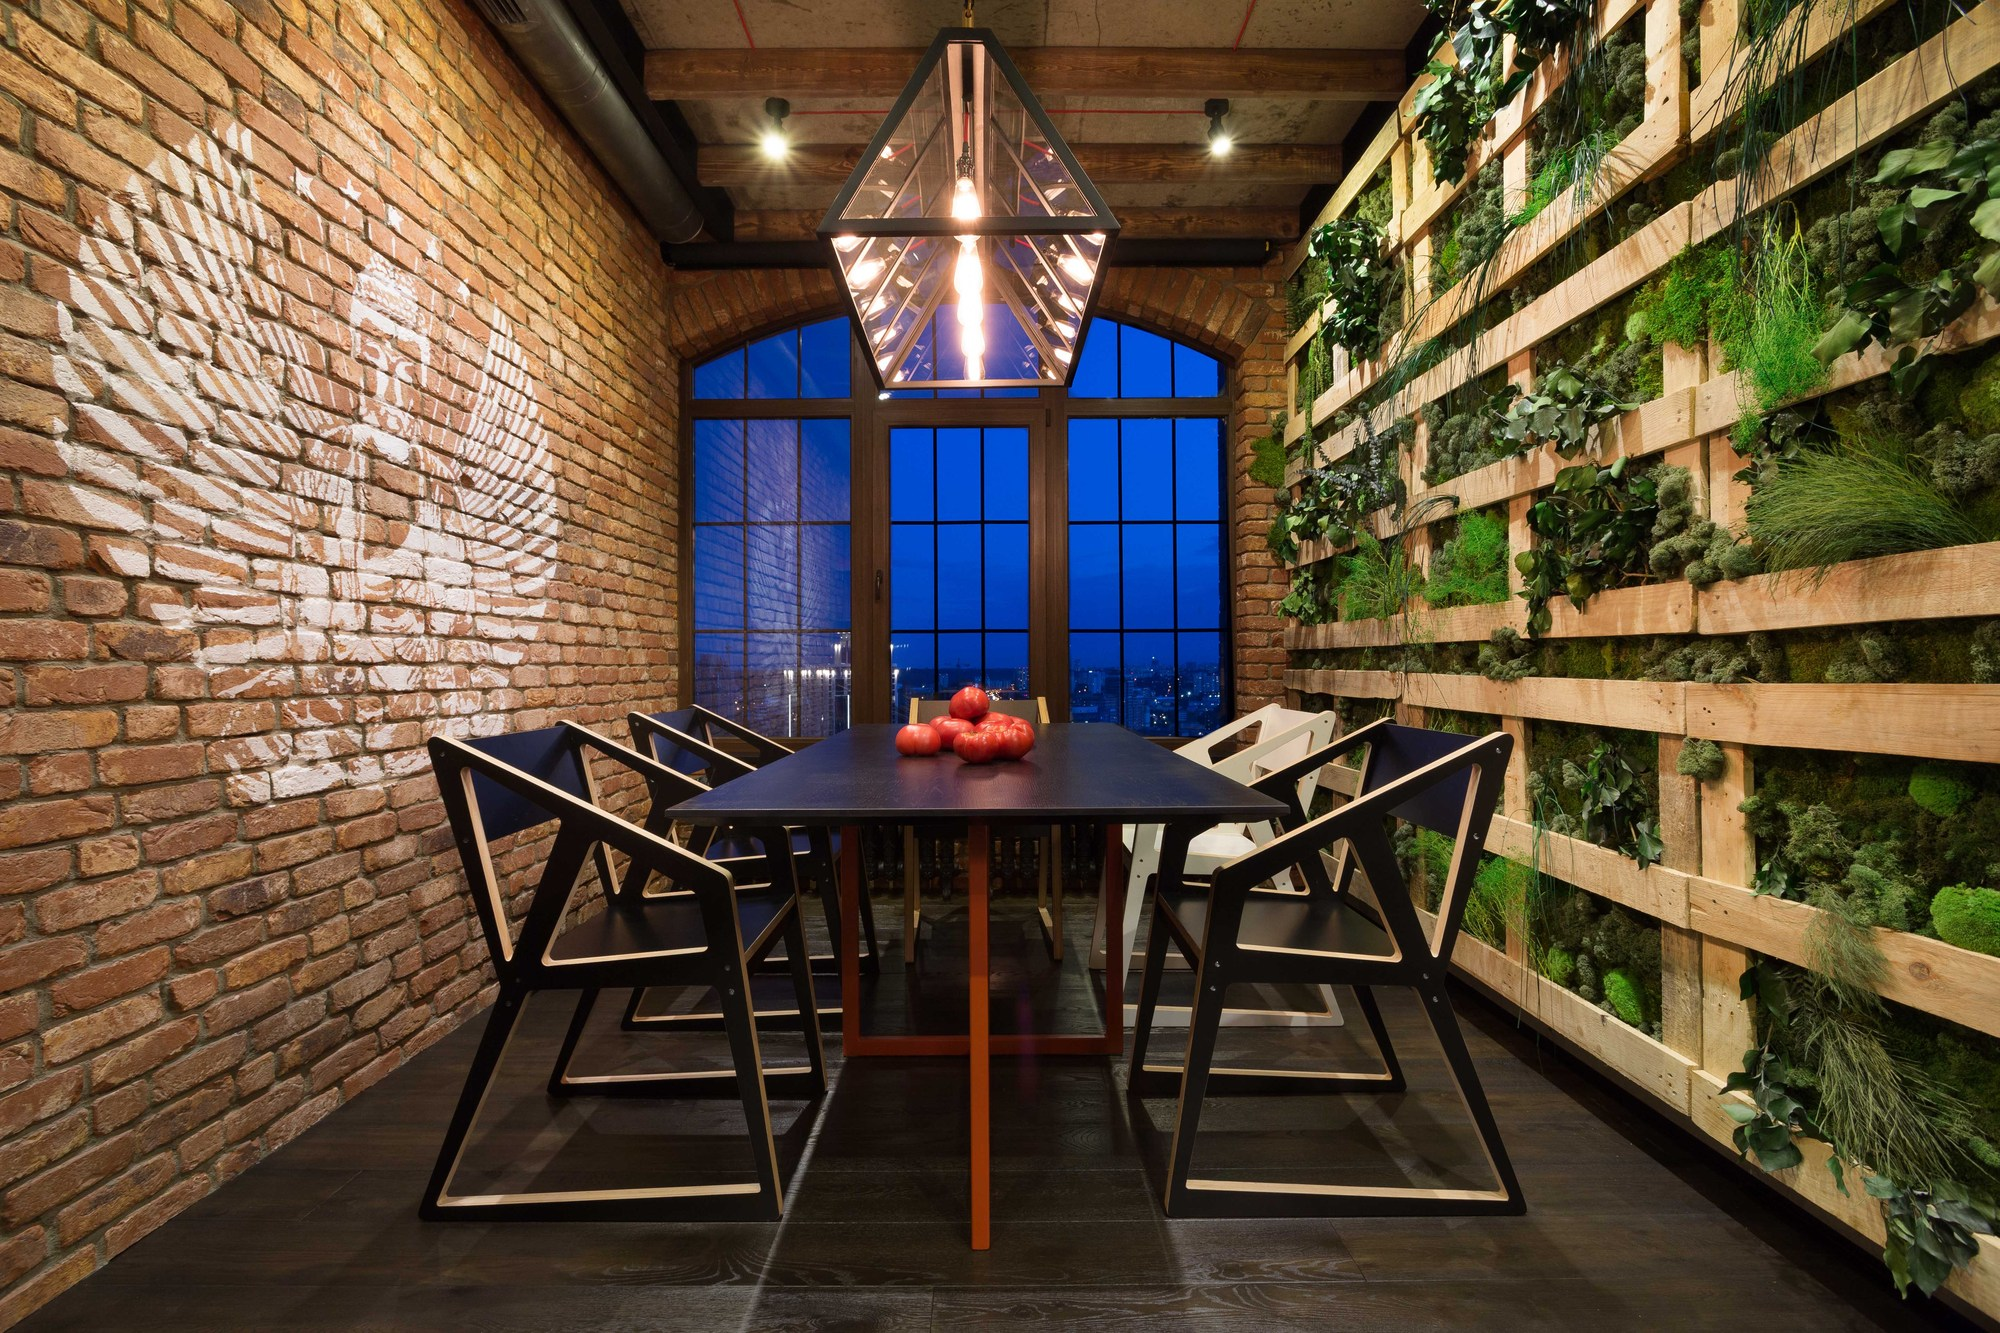 Лаконична трапезария в стил таванско помещение от групата дизайнери на MARTIN архитекти: тухлена стена с противоположна растителност, черен под, минималистични мебели, геометрична структура на осветление